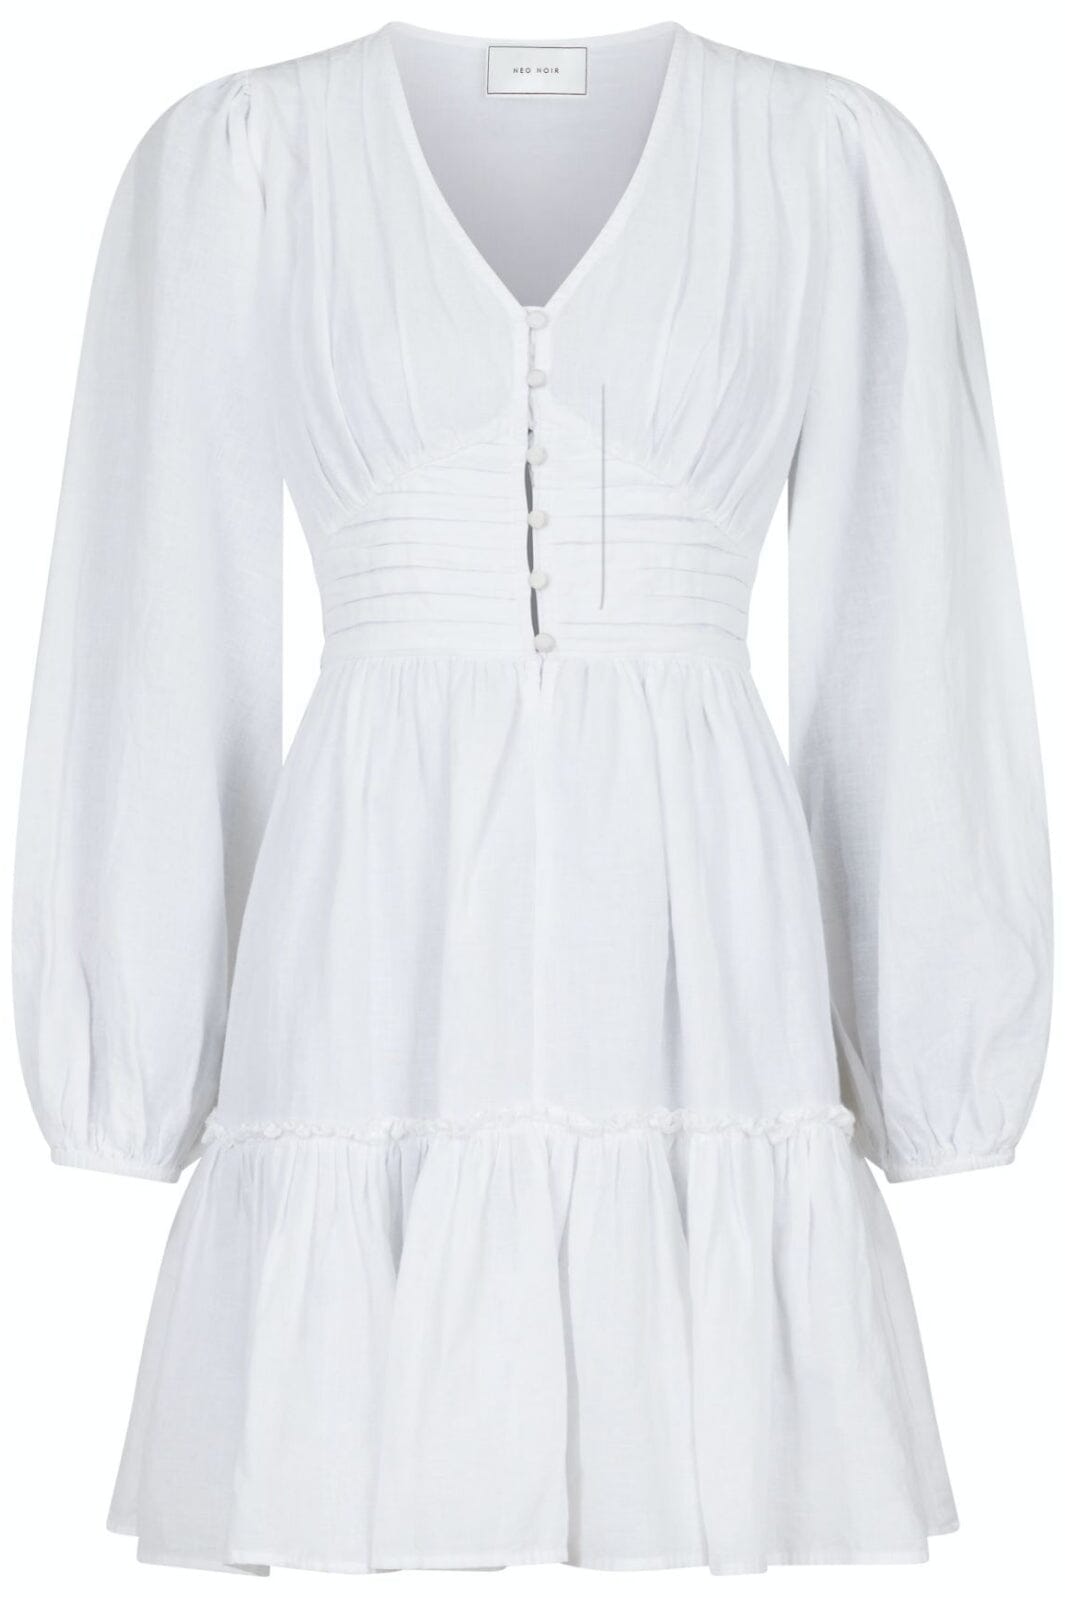 Neo Noir - Rihana Linen Dress - White Kjoler 